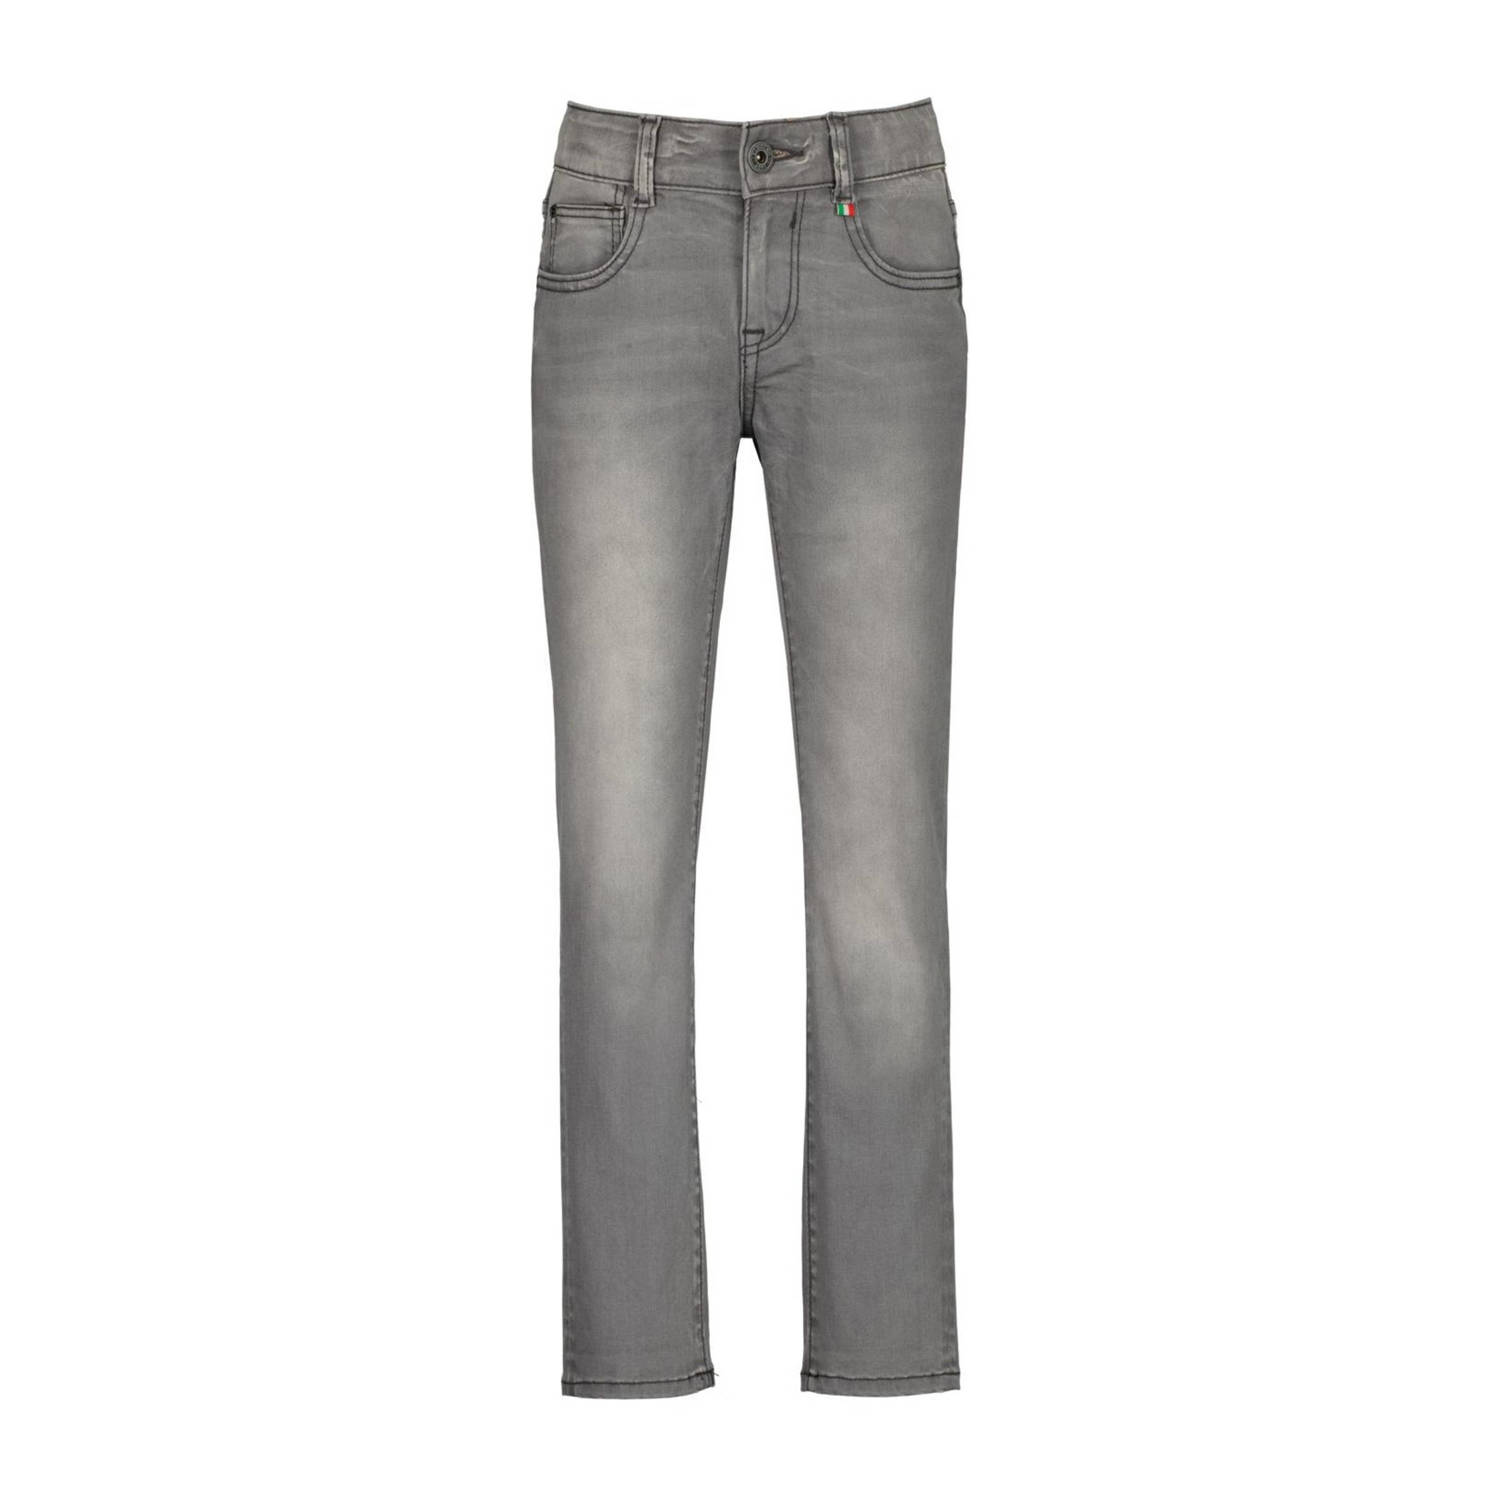 VINGINO skinny jeans Aron light grey Grijs Jongens Stretchdenim Effen 128